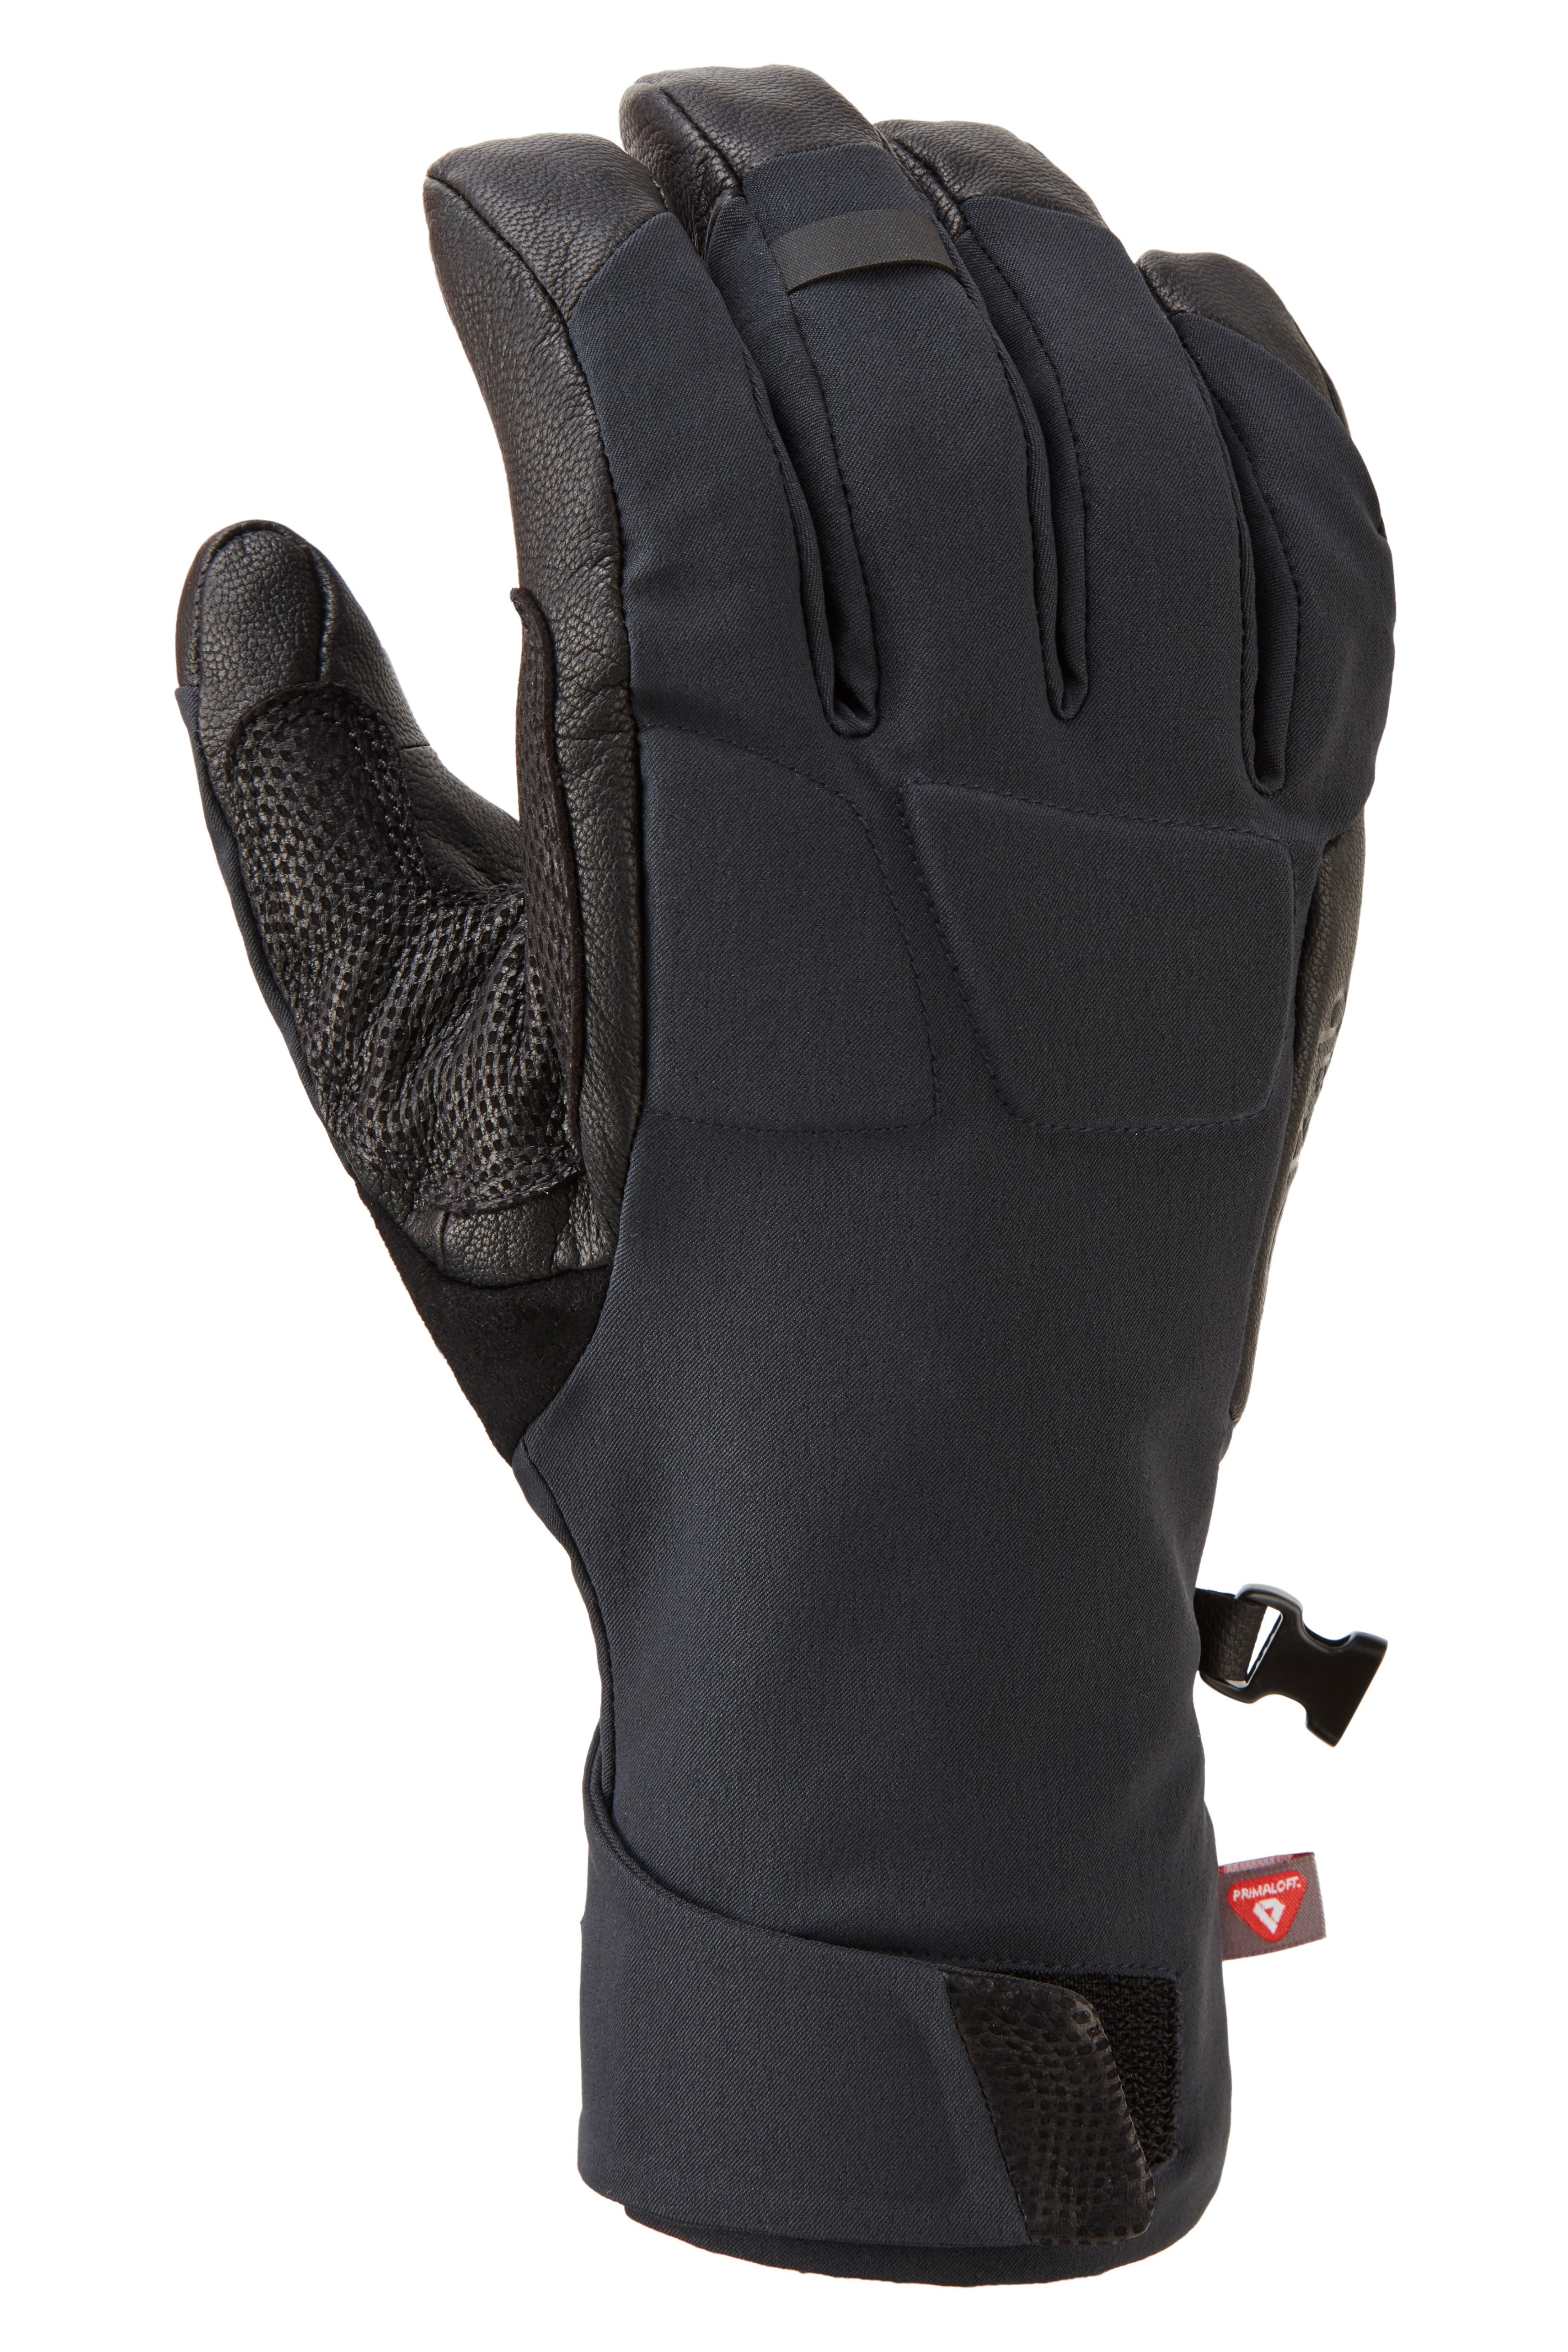 Fulcrum GTX Glove, black